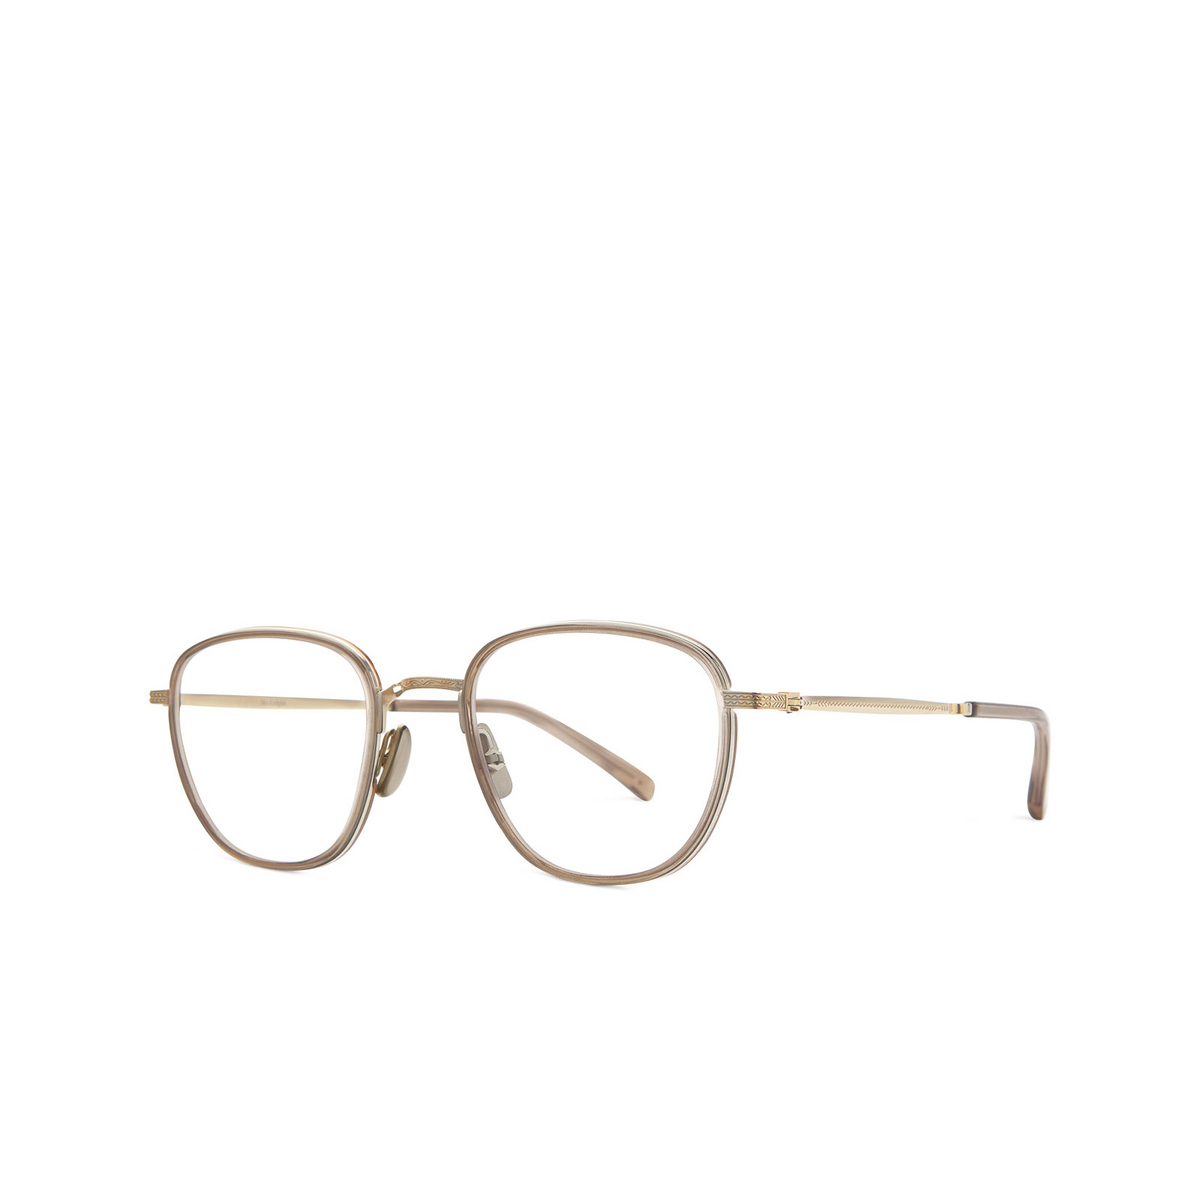 Mr. Leight GRIFFITH II C Eyeglasses TOP-12KG Topaz-12K White Gold - 2/3